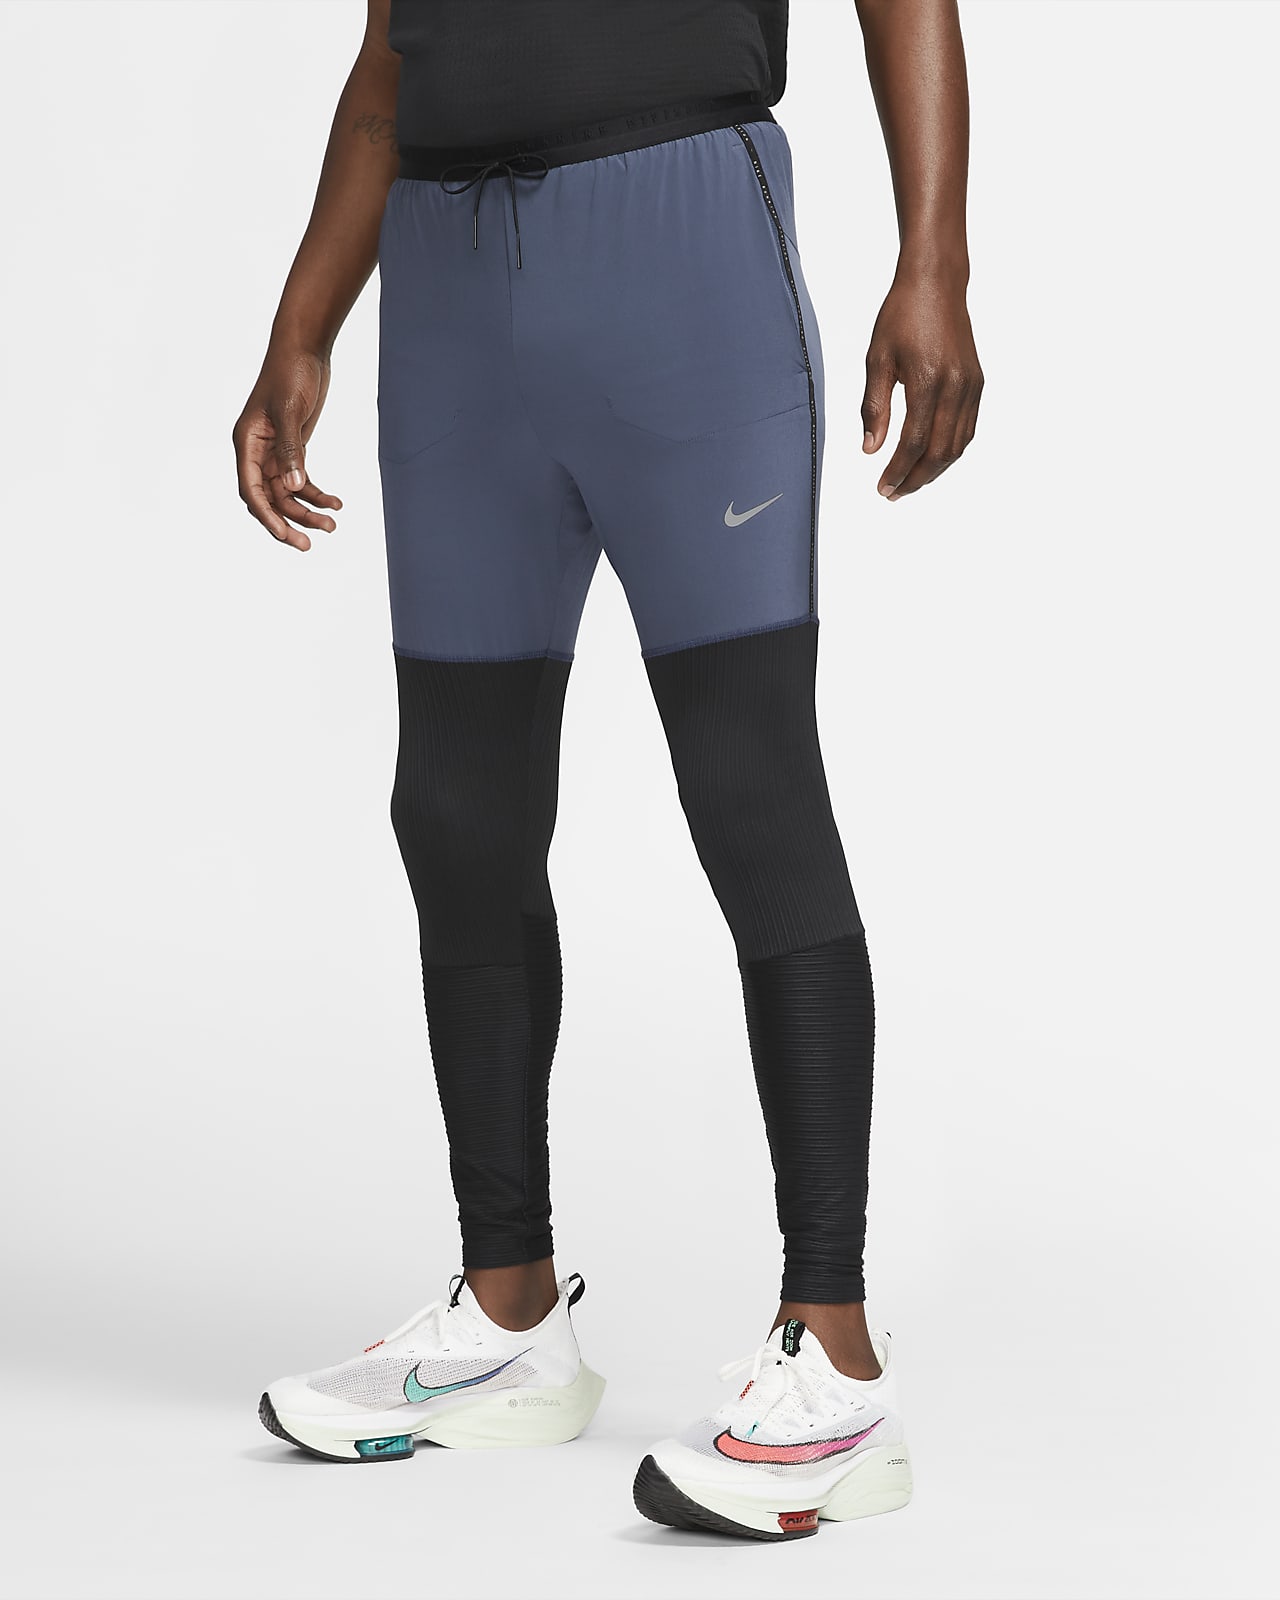 Nike Dri-FIT Phenom Run Division Men's Full-Length Hybrid Running Trousers